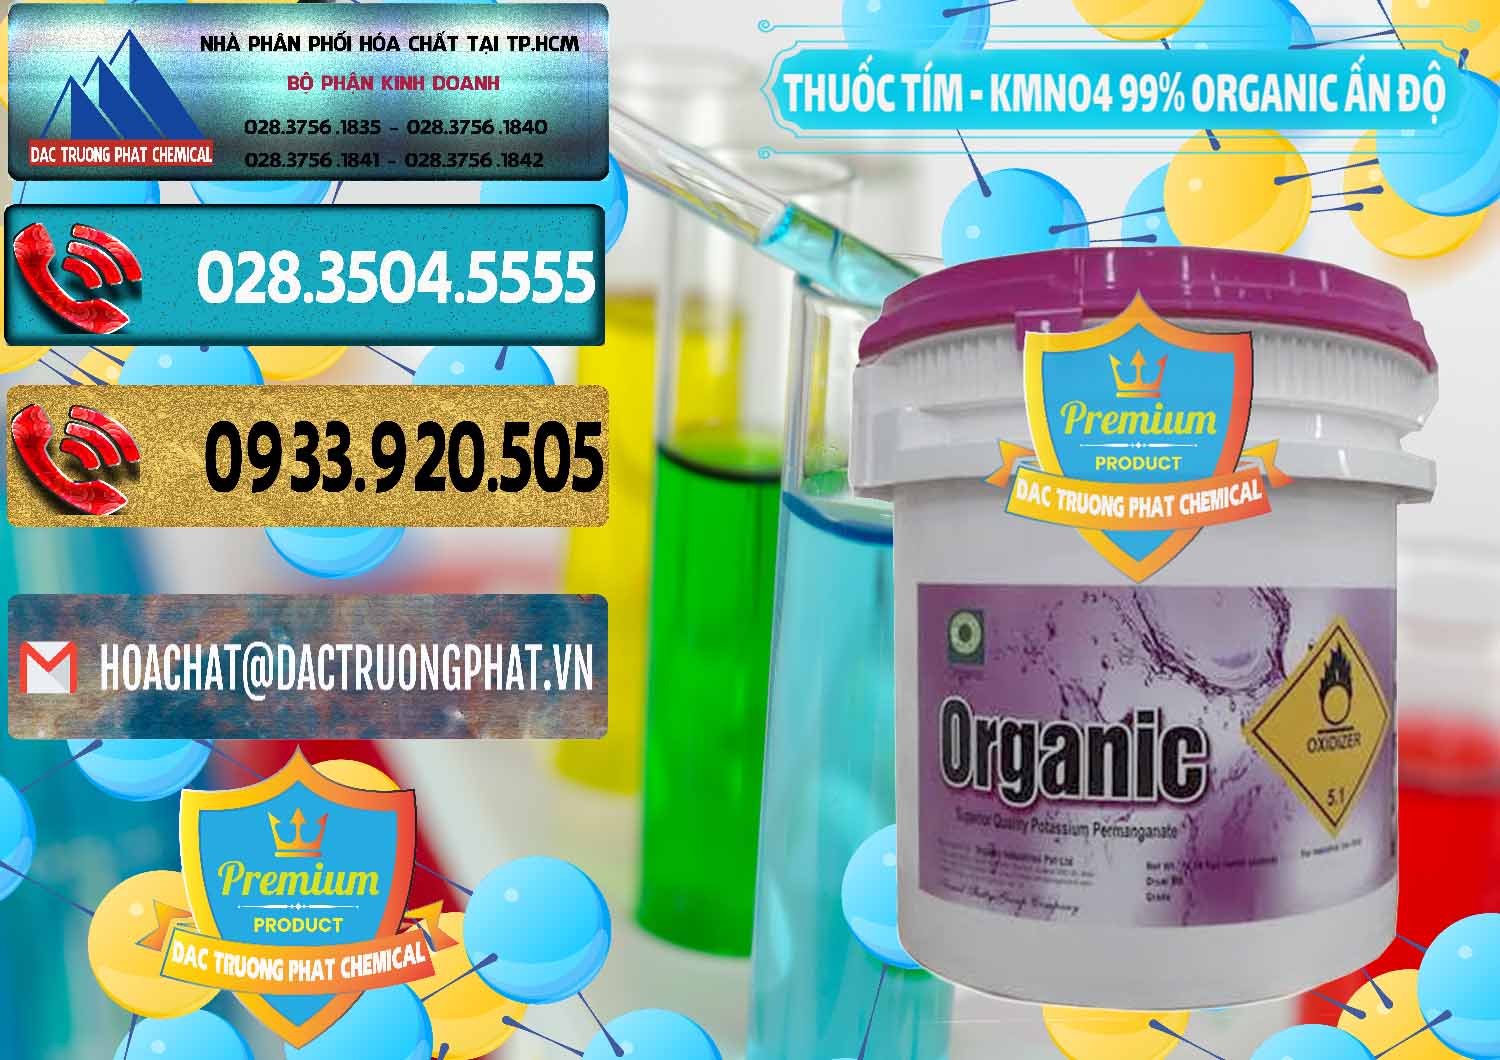 Nơi bán - phân phối Thuốc Tím - KMNO4 99% Organic Ấn Độ India - 0216 - Chuyên phân phối và cung ứng hóa chất tại TP.HCM - hoachatdetnhuom.com